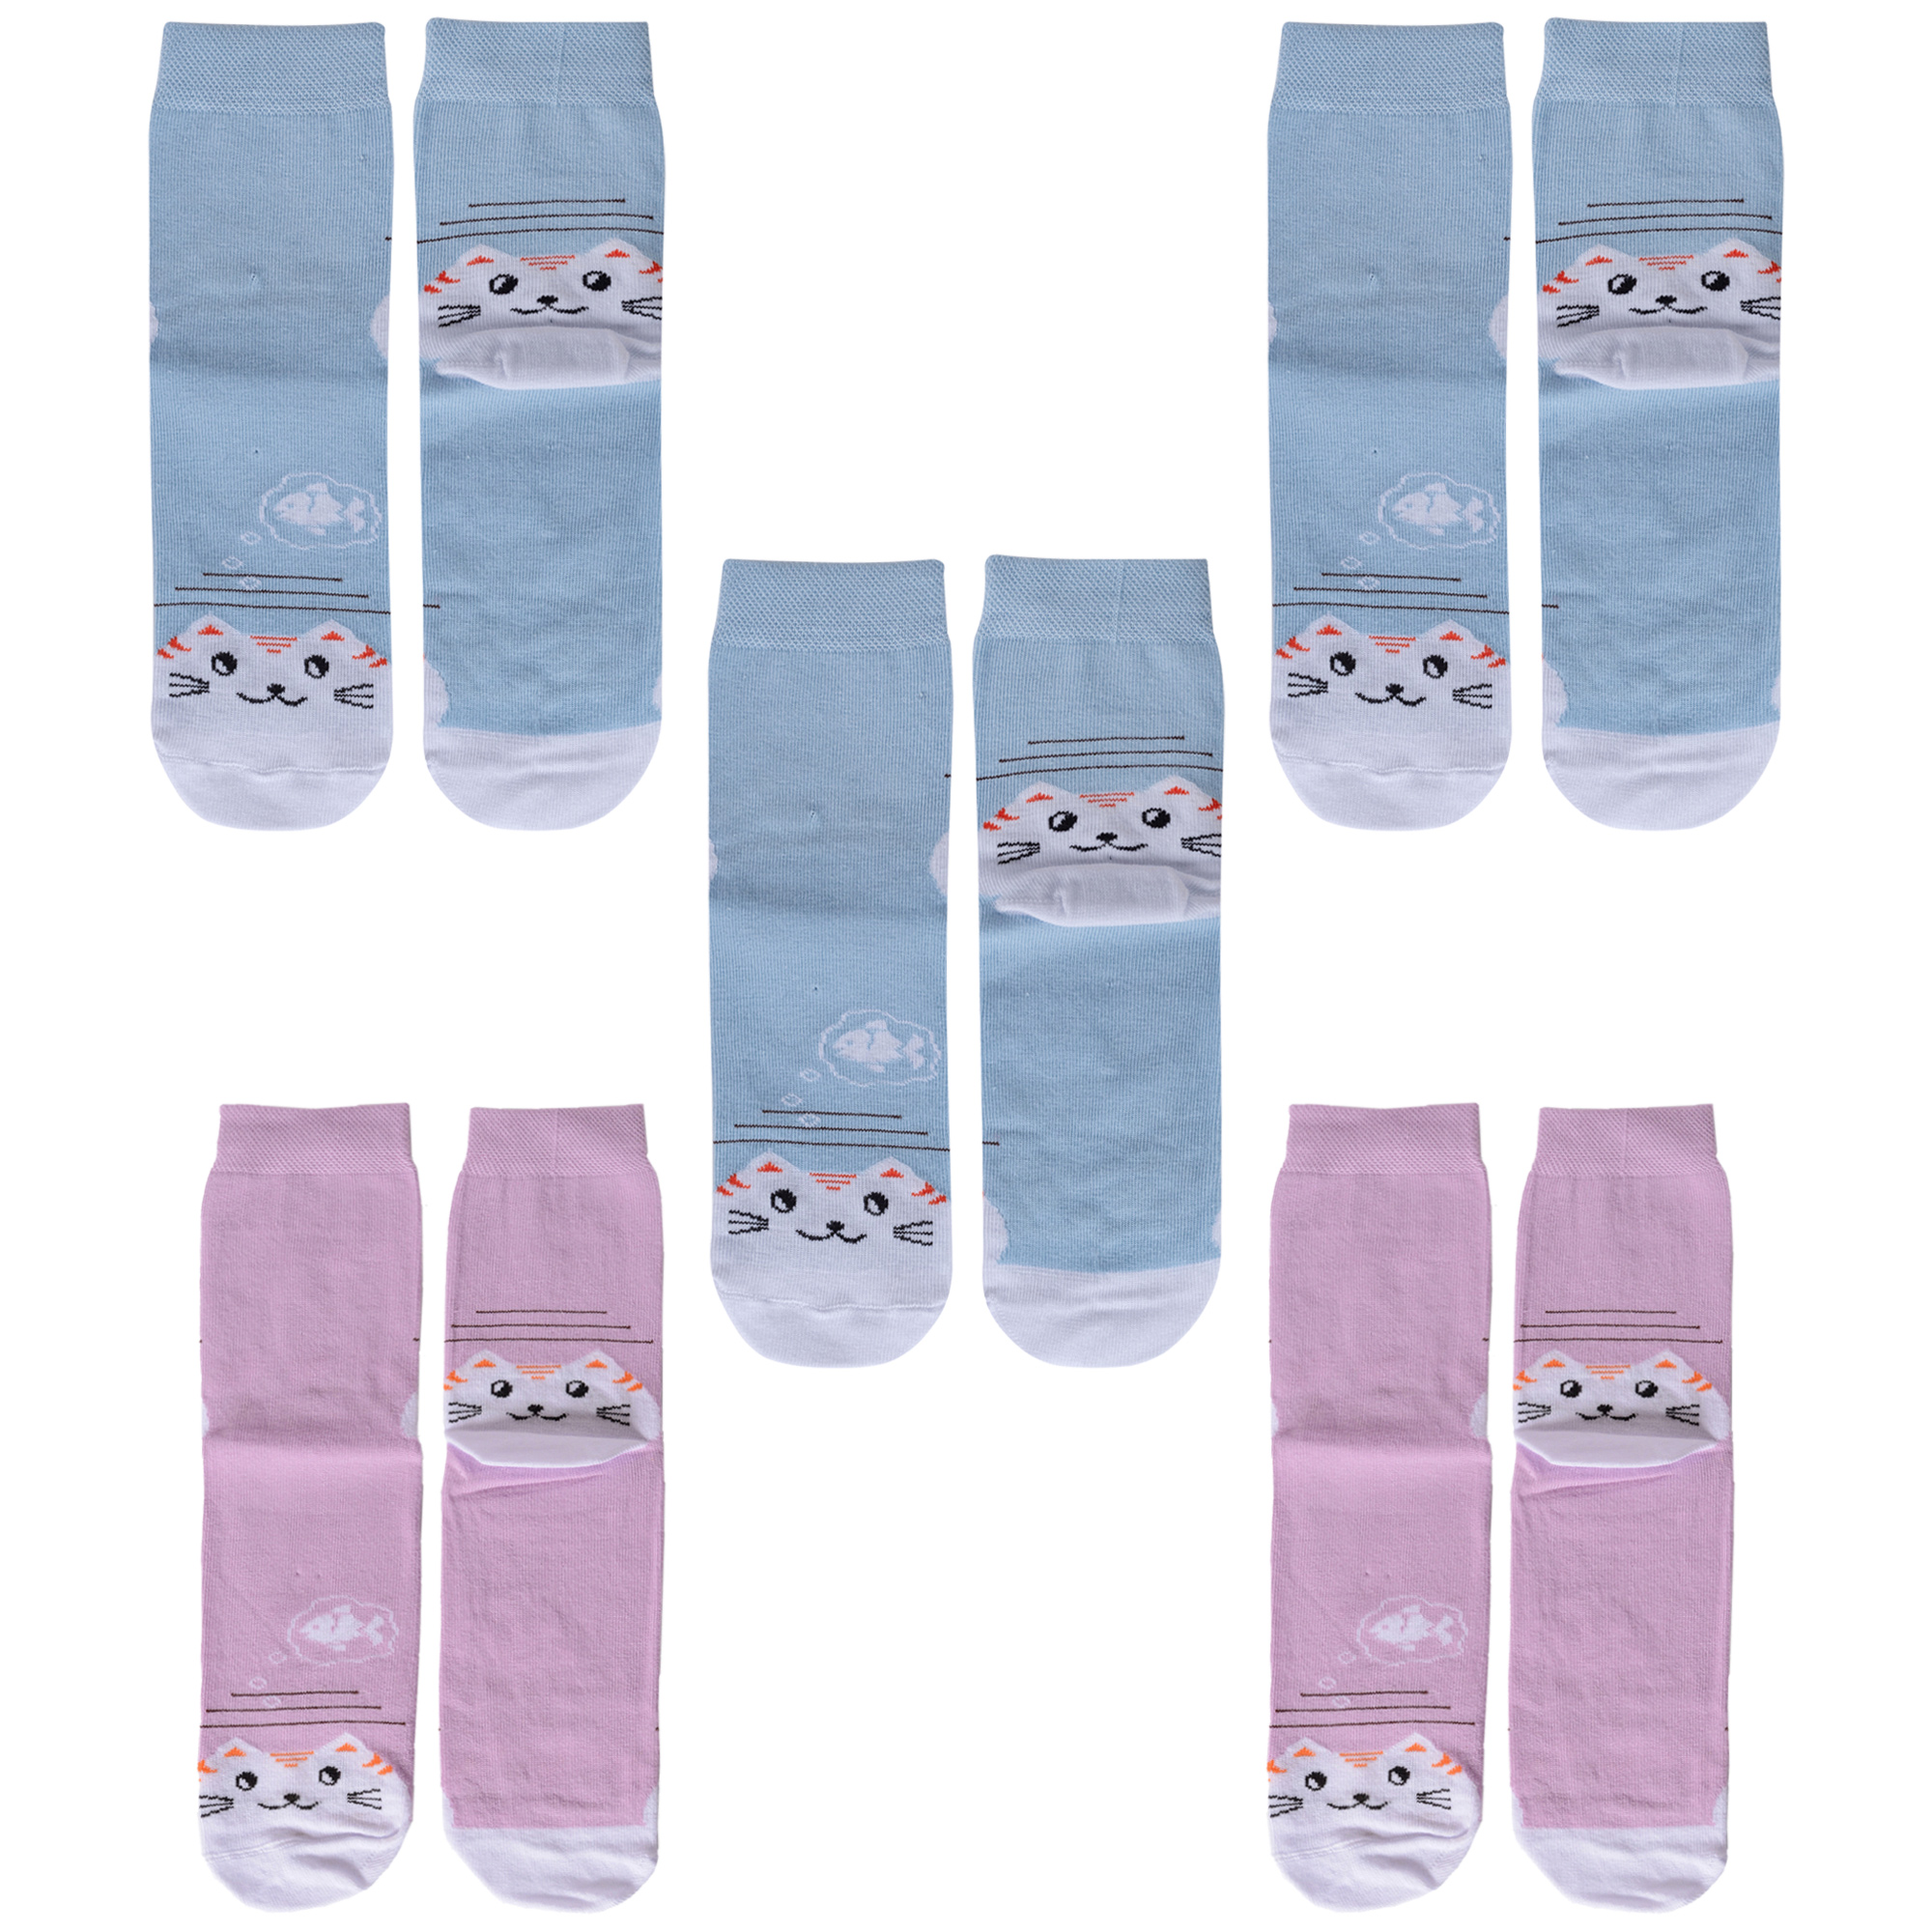 Купить Носки для девочек ХОХ 5-D-3R12 цв. голубой; фиолетовый; белый р. 30,